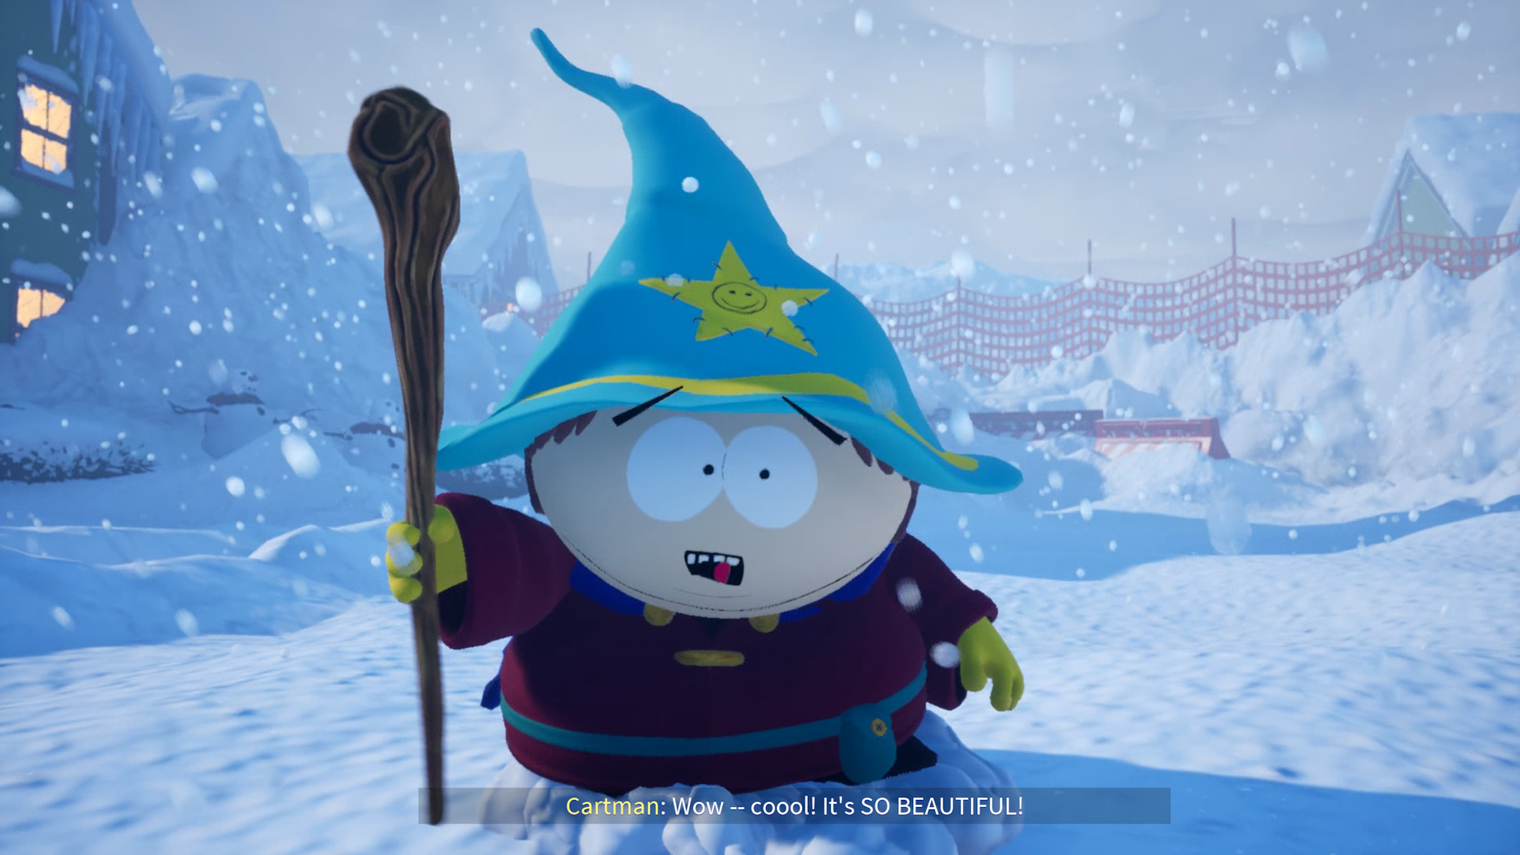 Snow Day! работает на Unreal Engine 5. Зачем игре новейший движок — непонятно: на снегу не отражается свет, а модели персонажей низкодетализированные